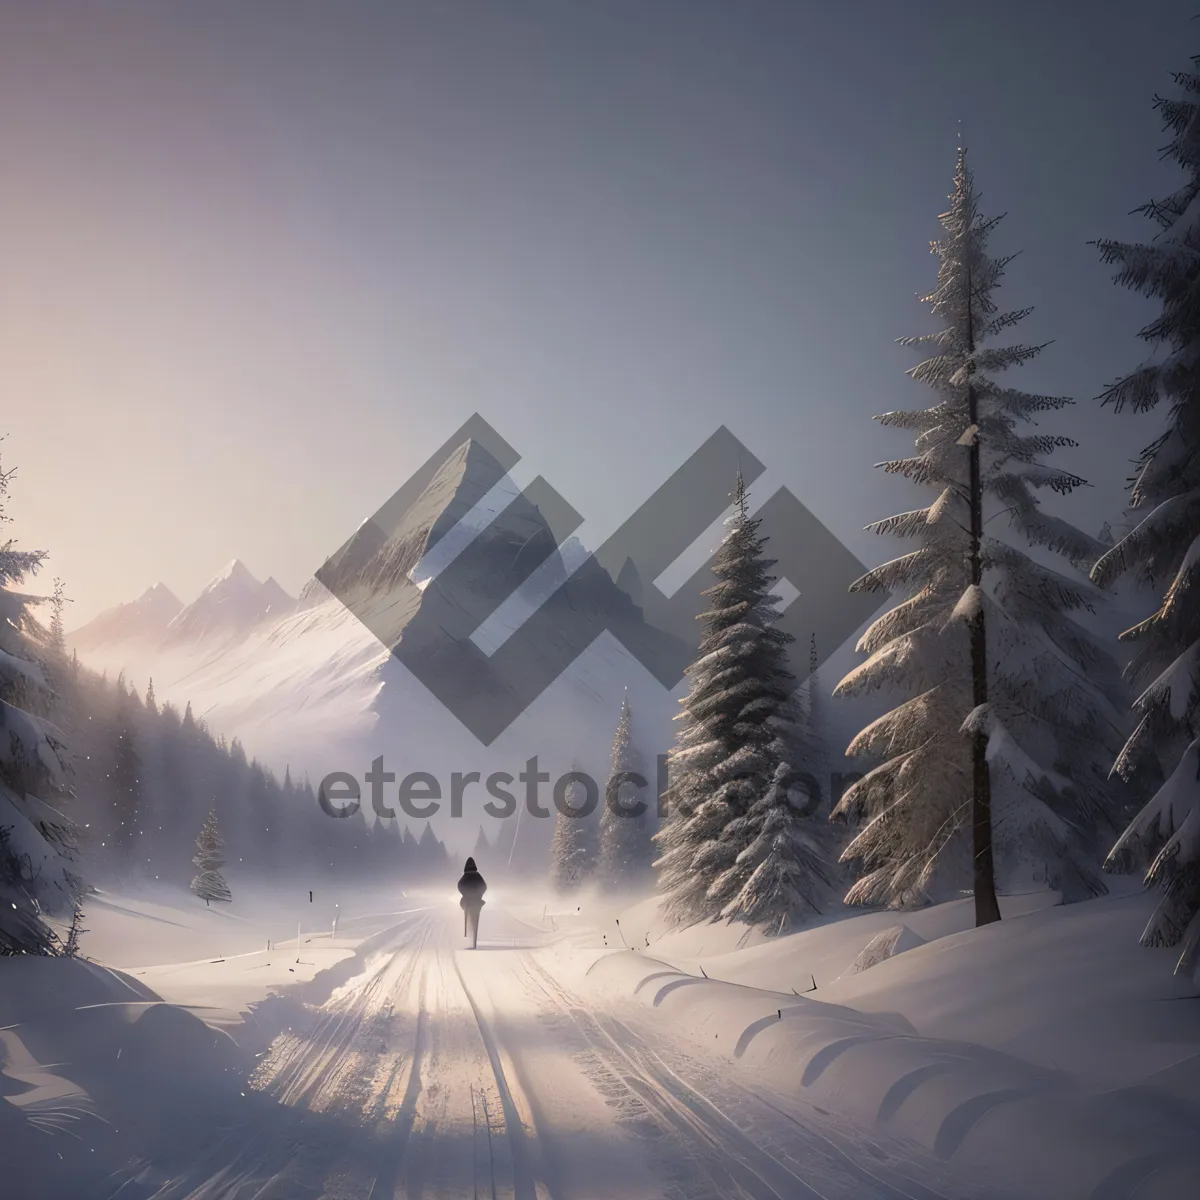 Picture of Snowy Alpine Peaks in Winter Landscape